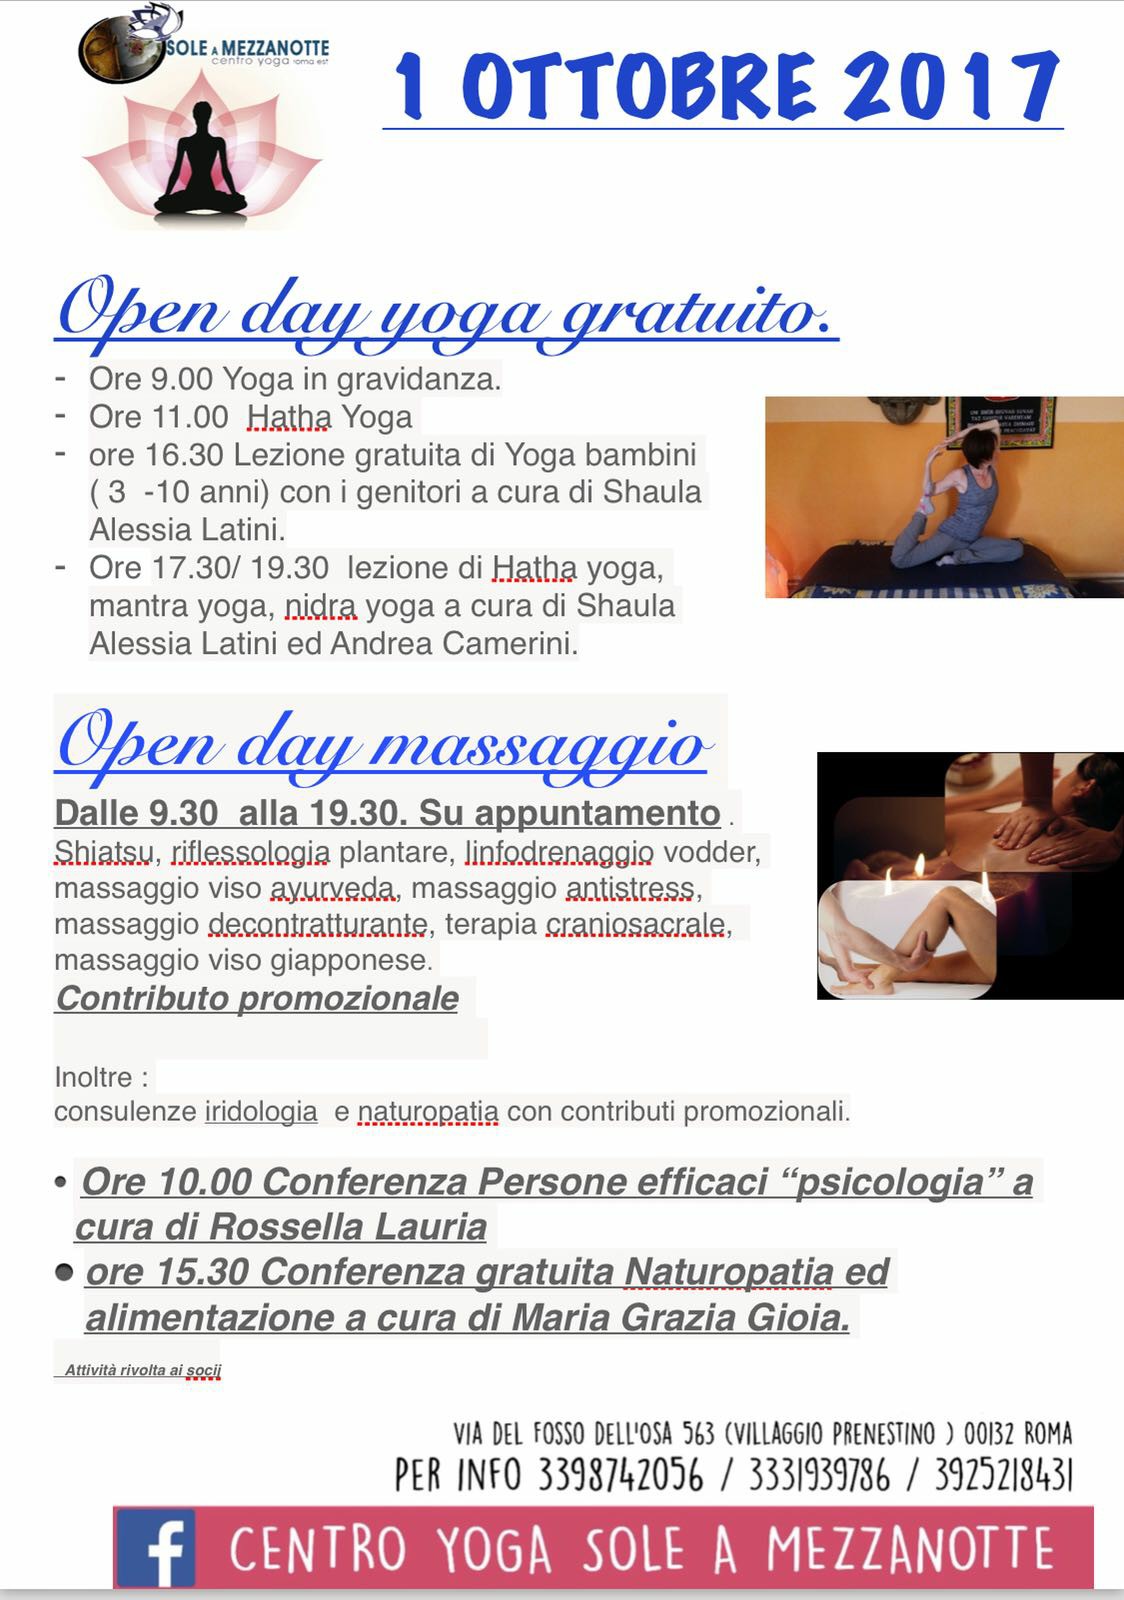 Mantra yoga con Andrea Camerini